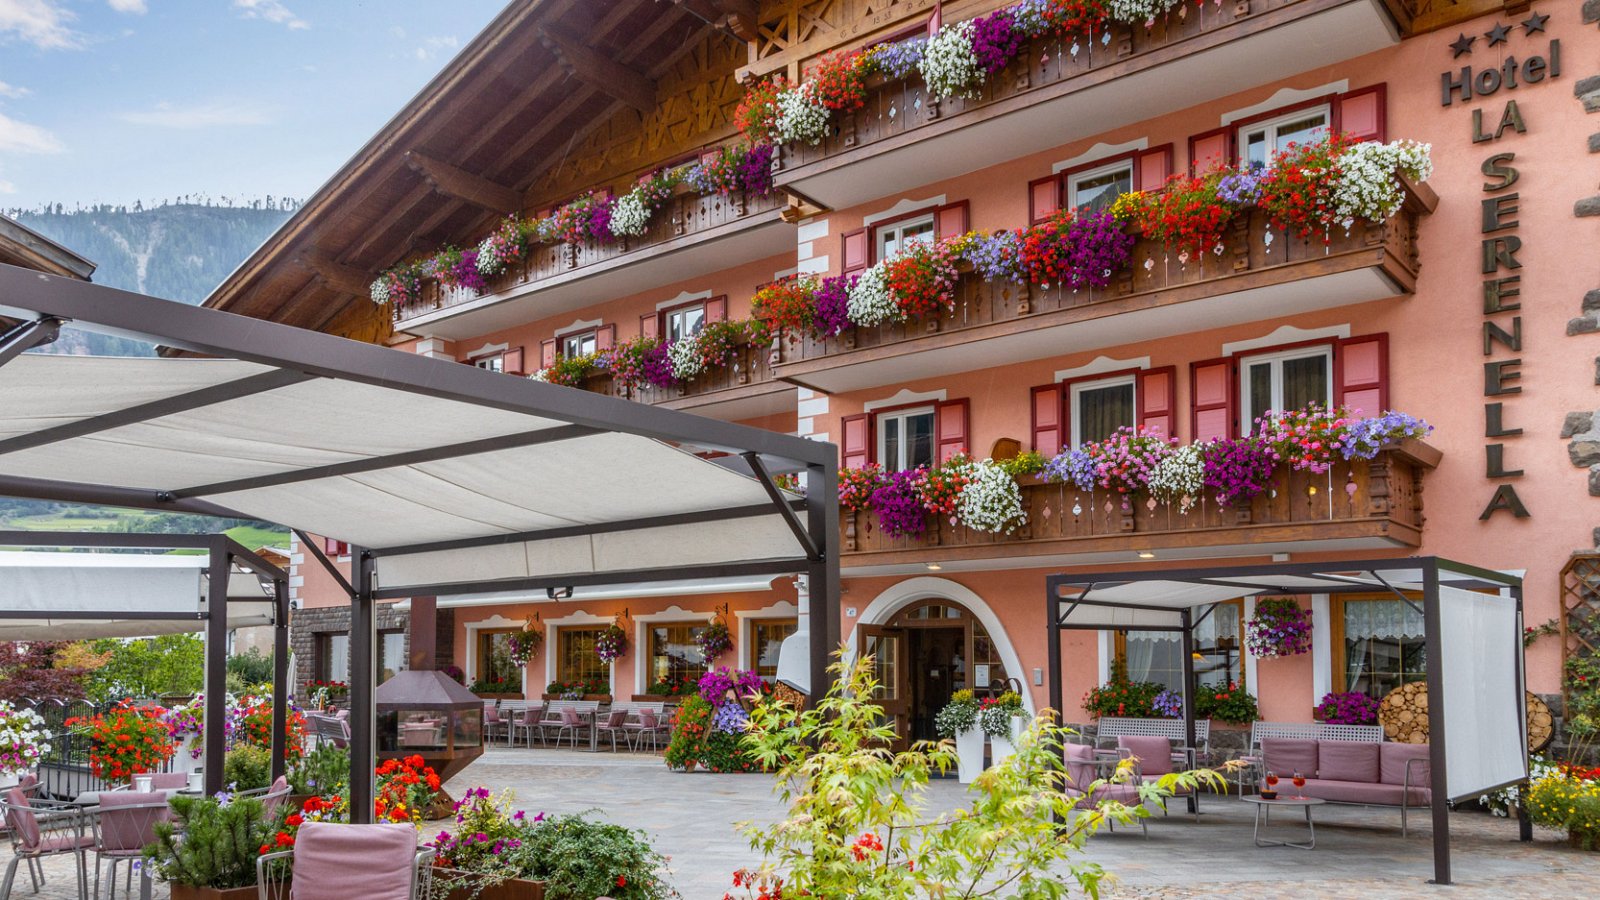 Das Hotel La Serenella in Moena im Trentino